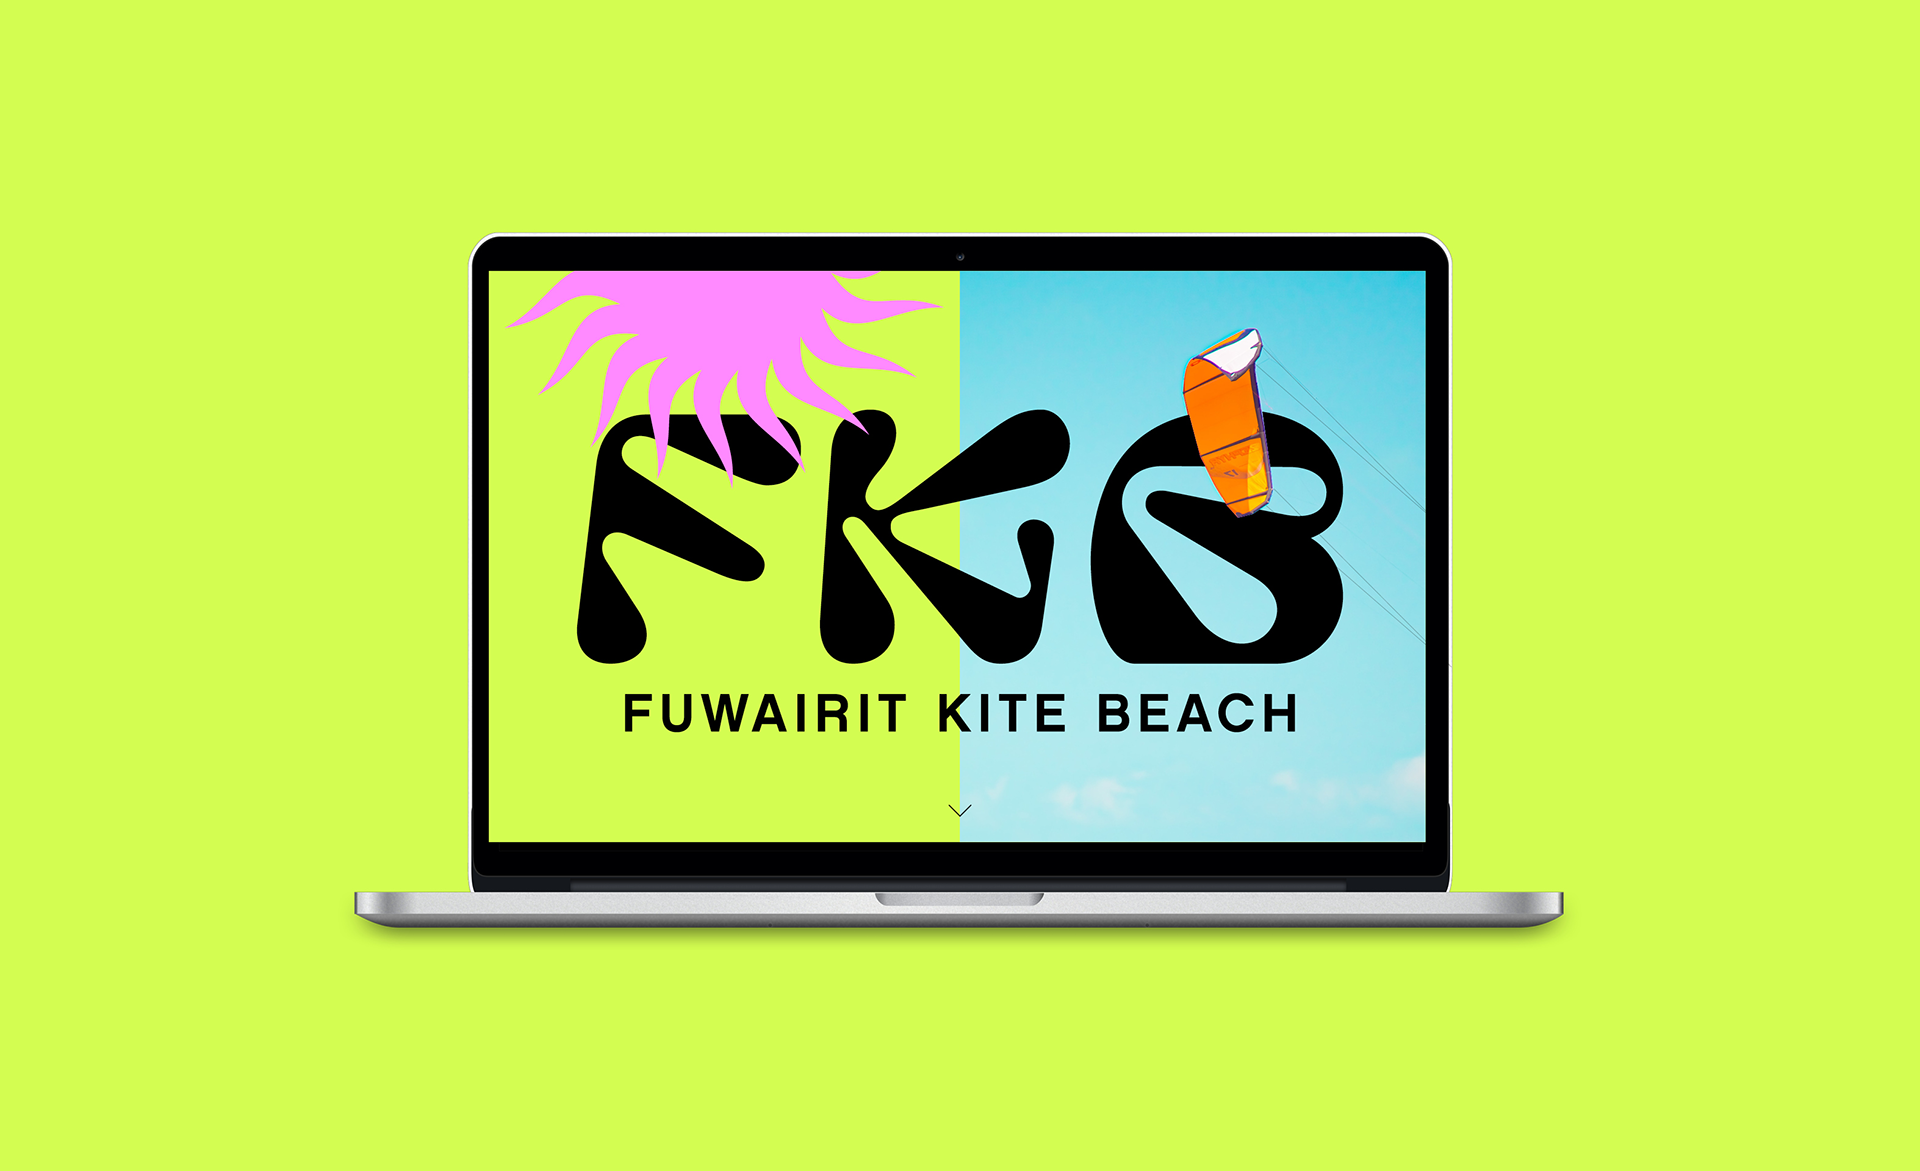 Fuwairit Kite Beach